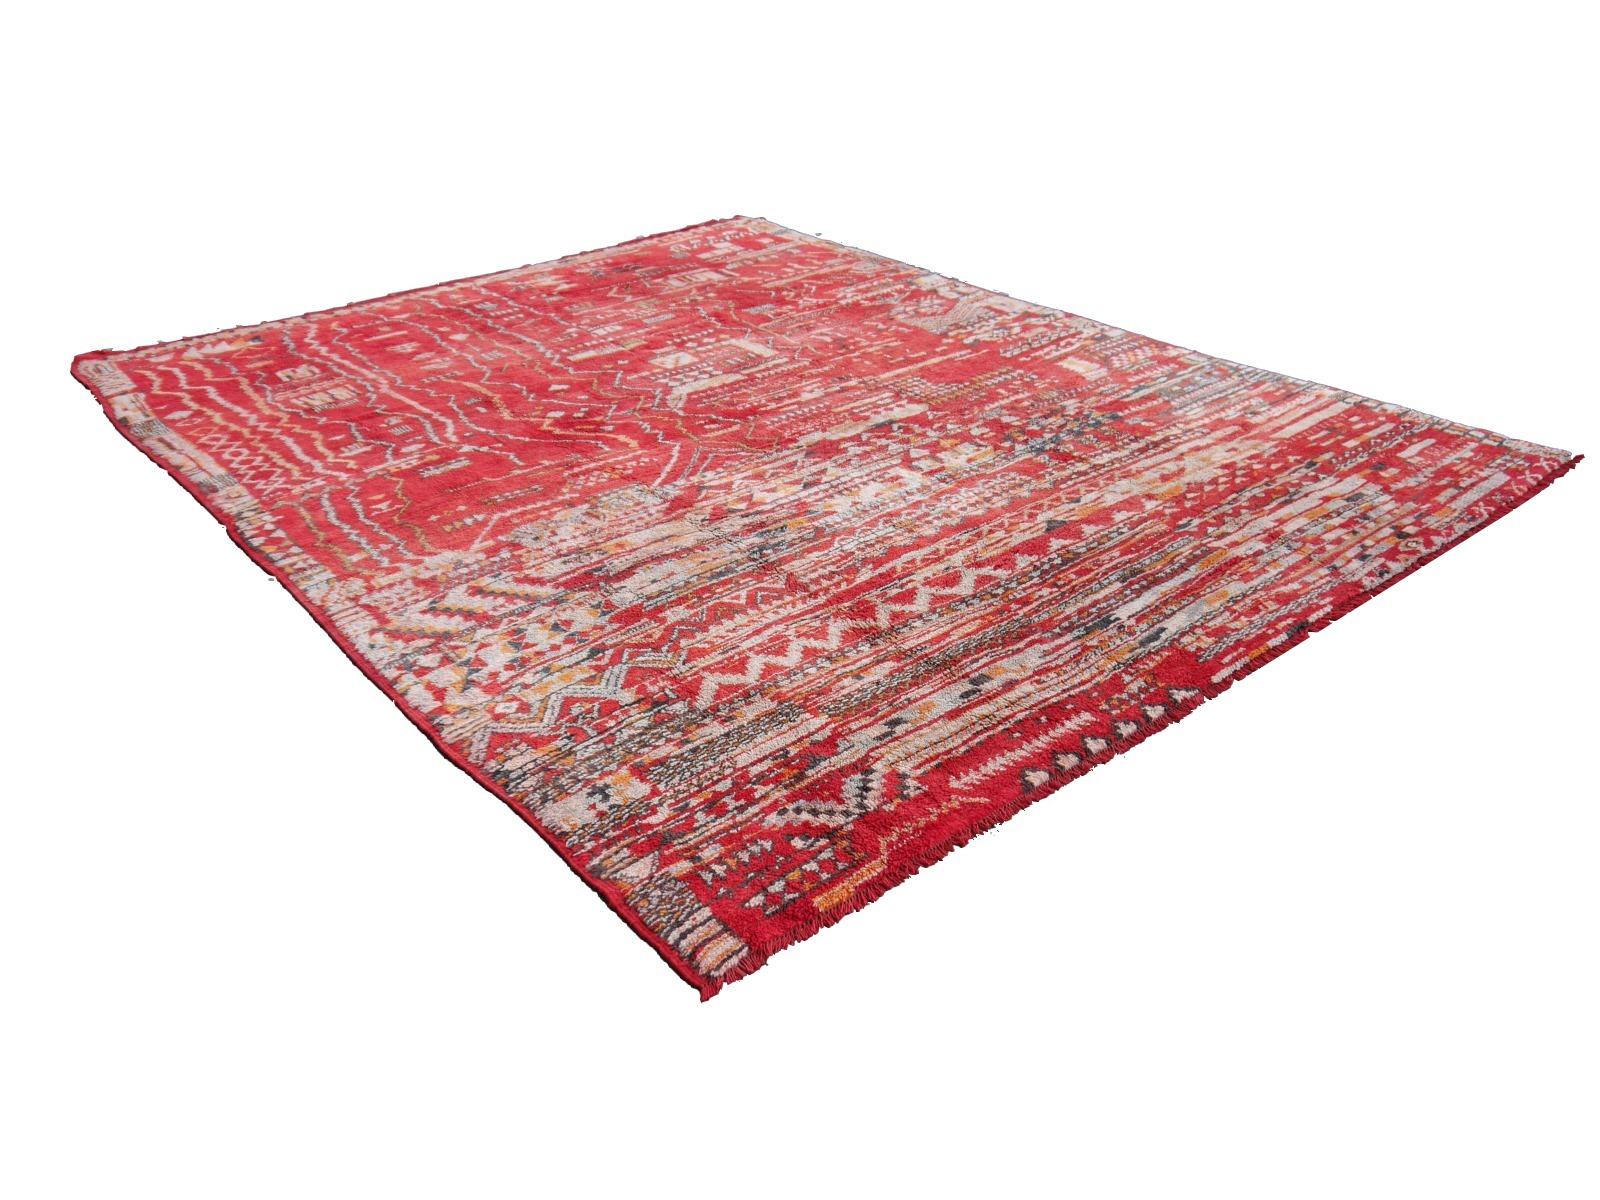 Großer roter marokkanischer Amazigh-Teppich mit nordafrikanischem Stammesmuster - Djoharian Collection'S 

Berberteppiche werden hauptsächlich in Marokko, Tunesien und Algerien hergestellt. Größter Produzent sind die Stammes- und Nomadenvölker der